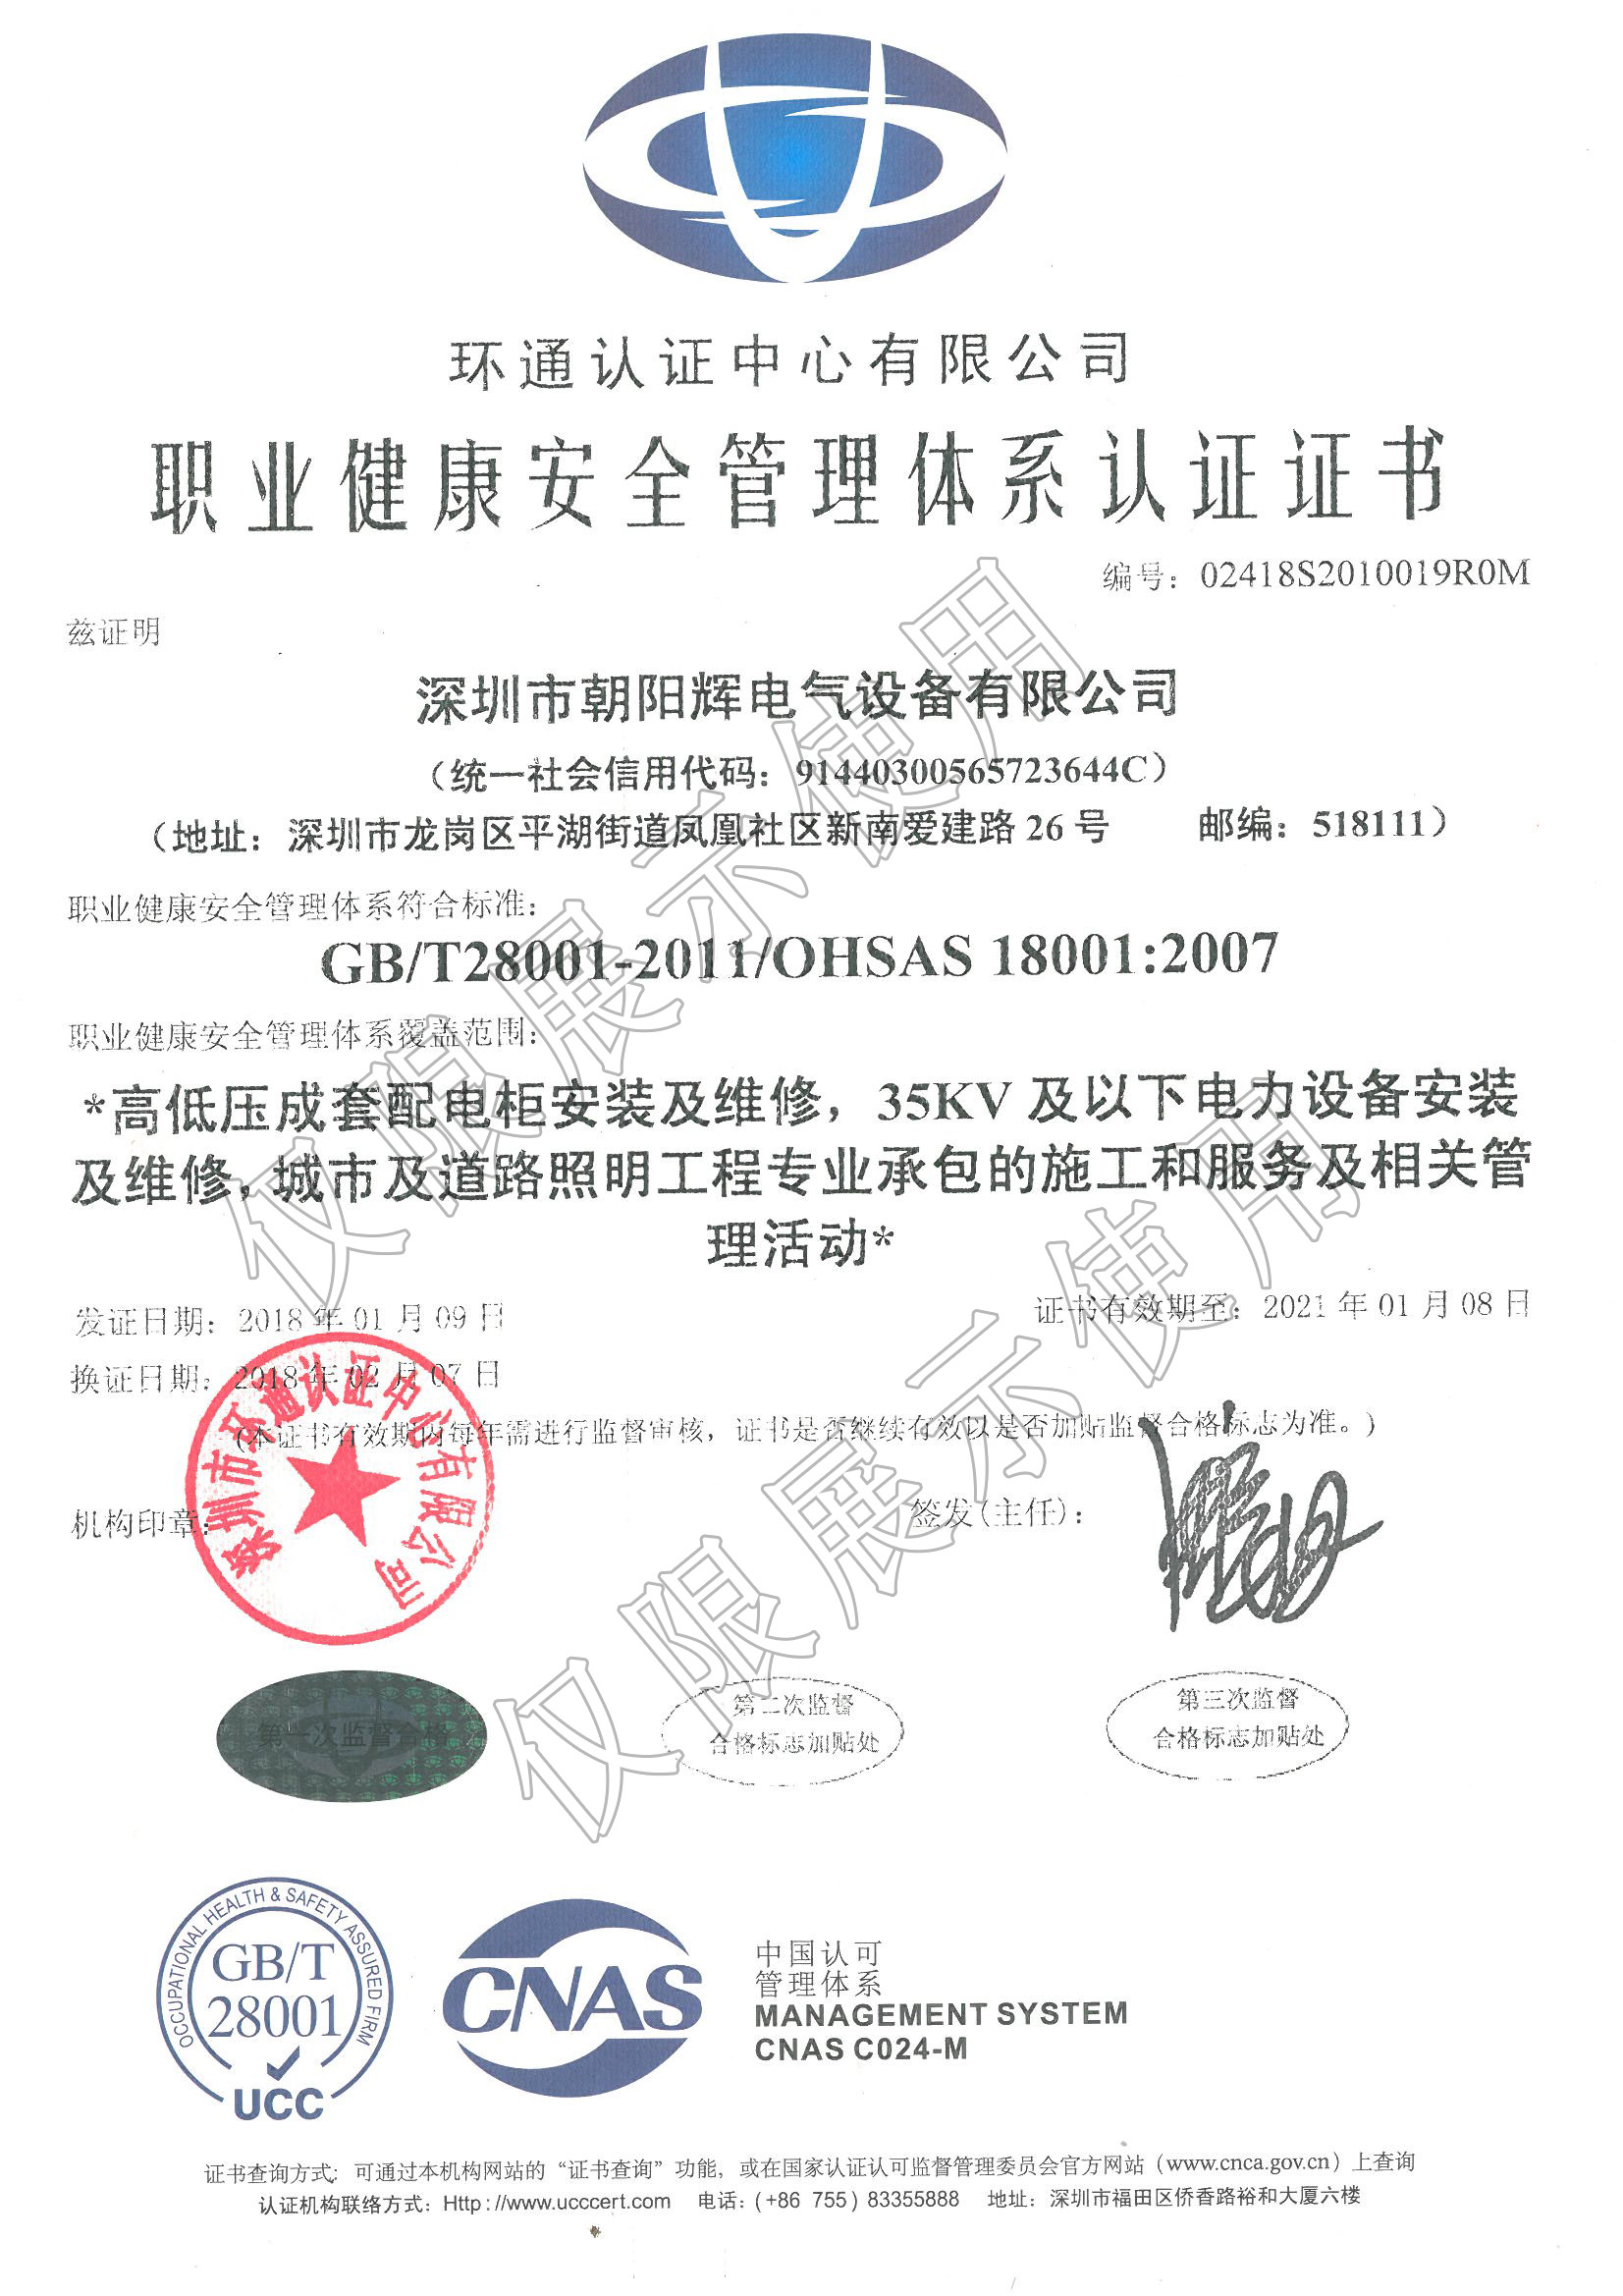 职业健康安全管理体系认证证书-中文_